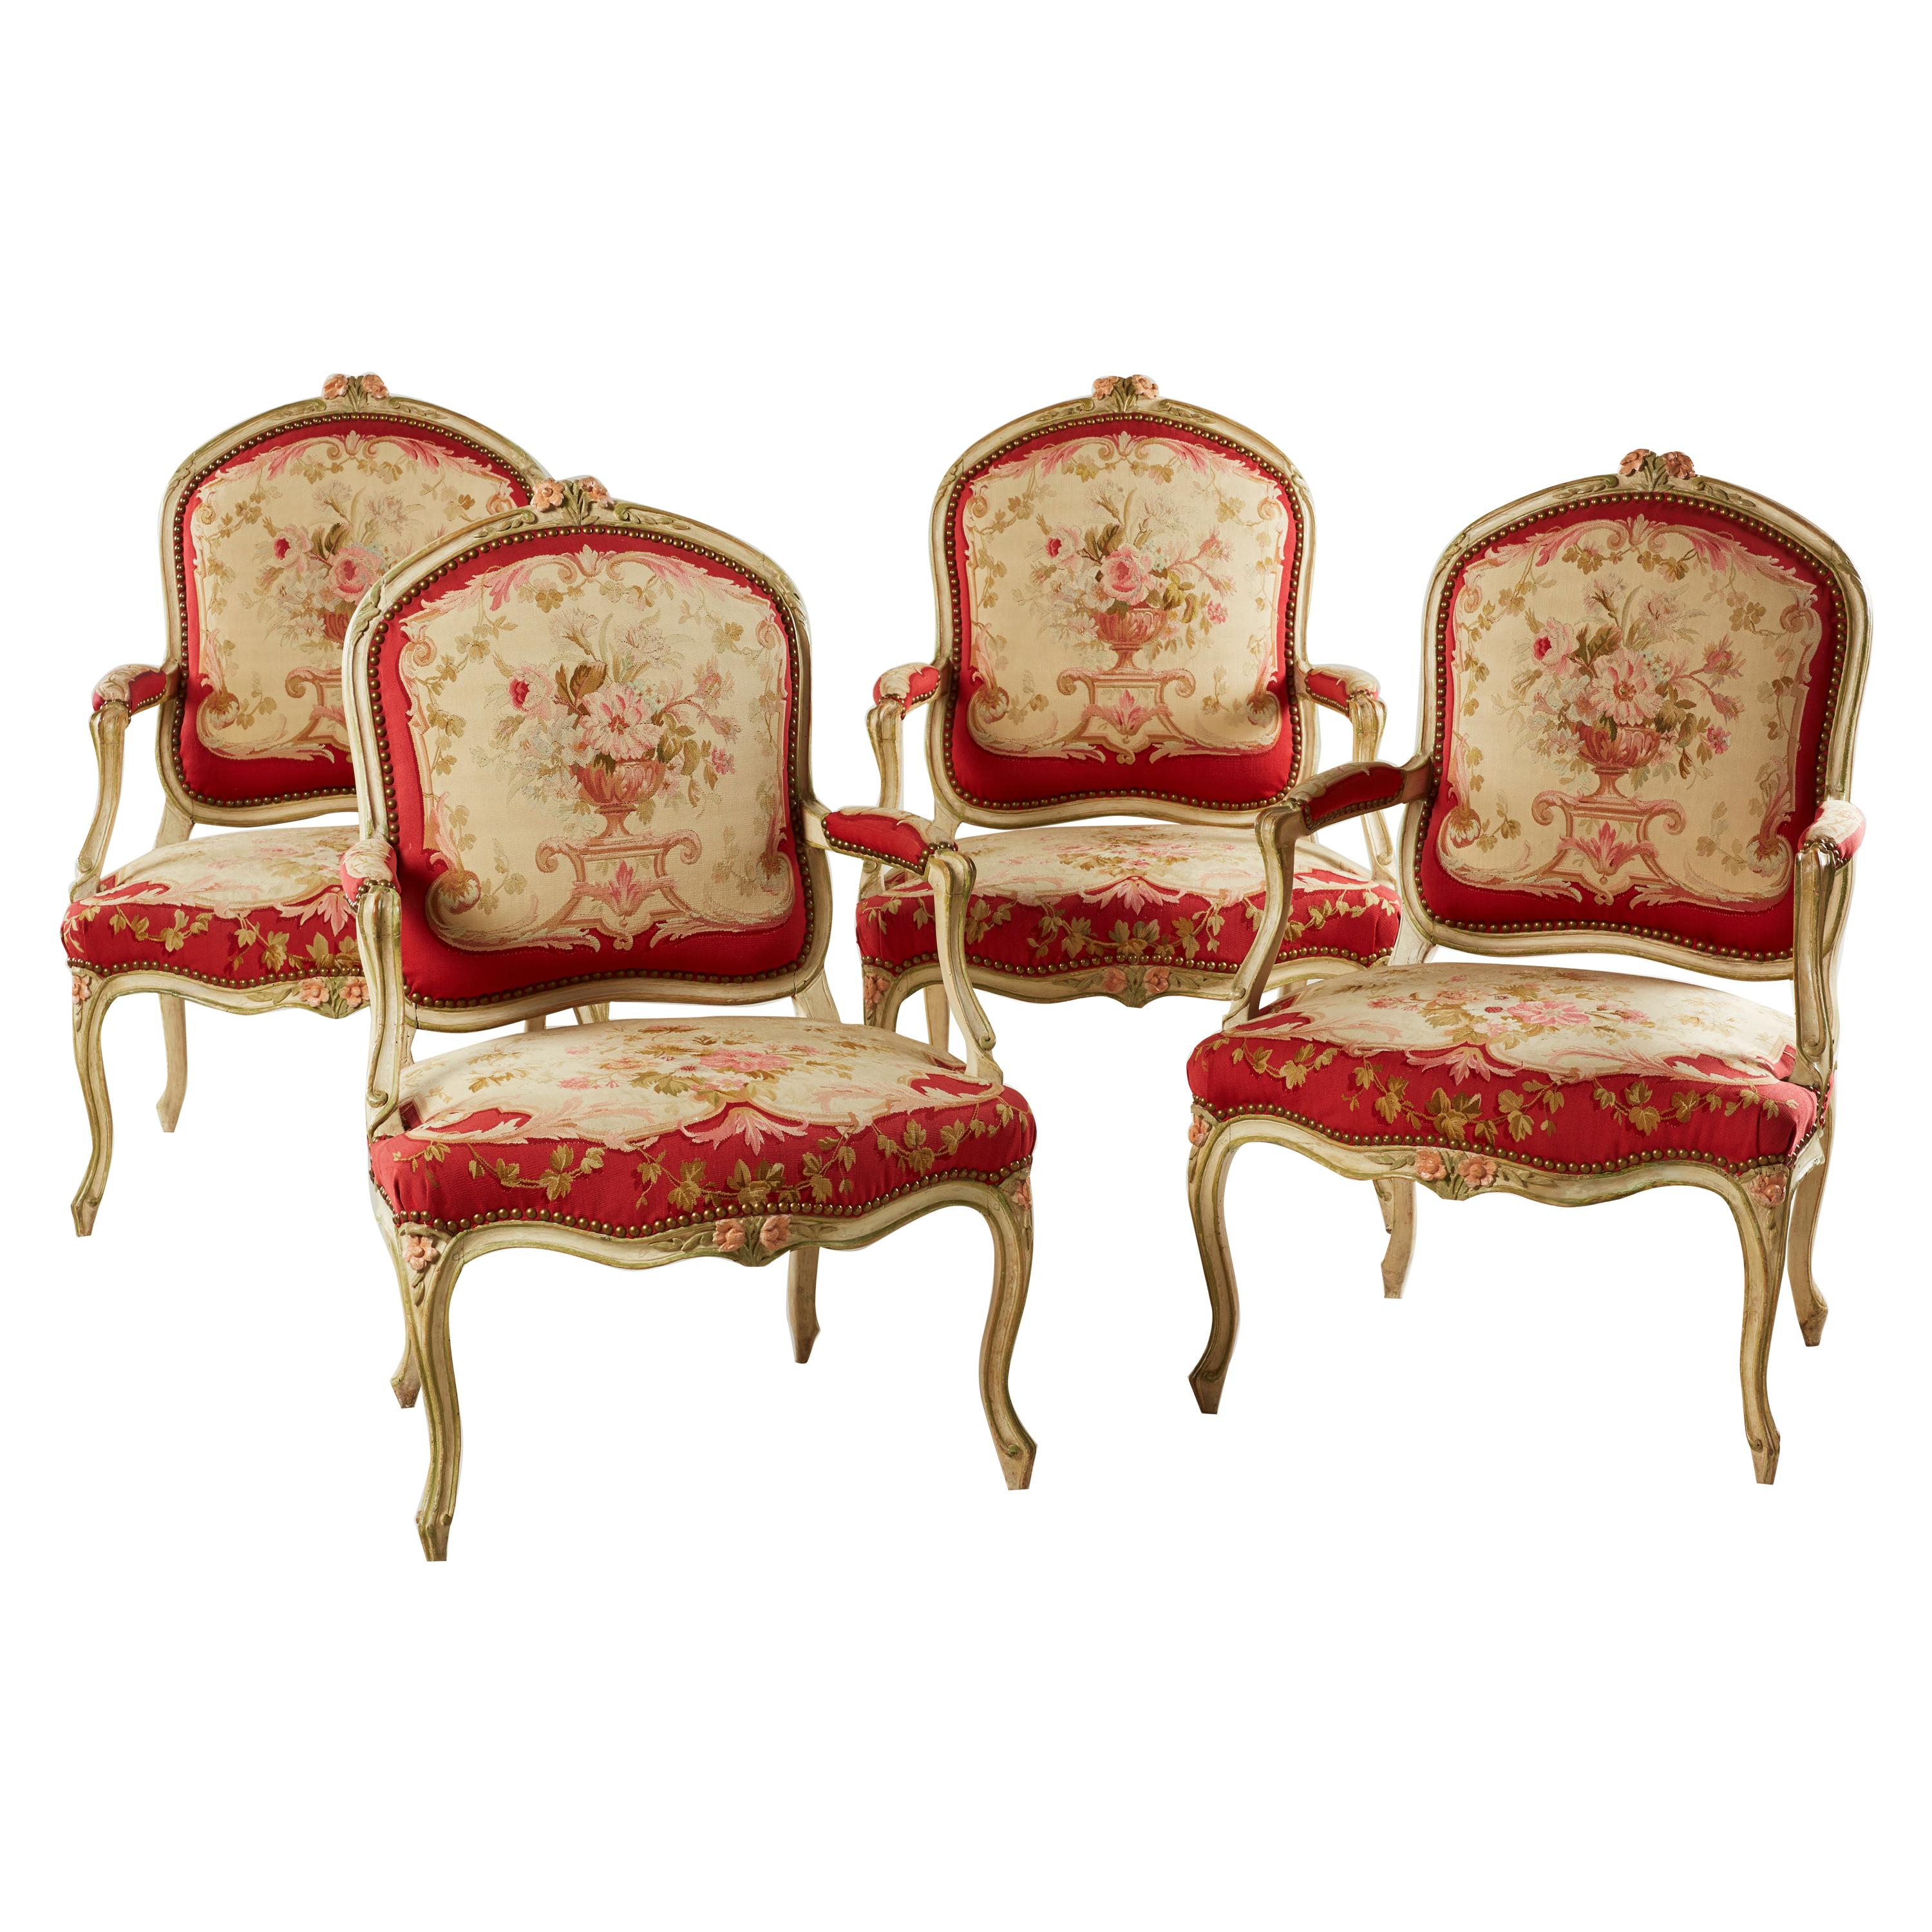 Ensemble de quatre fauteuils peints rococo Louis XV du milieu du XVIIIe siècle